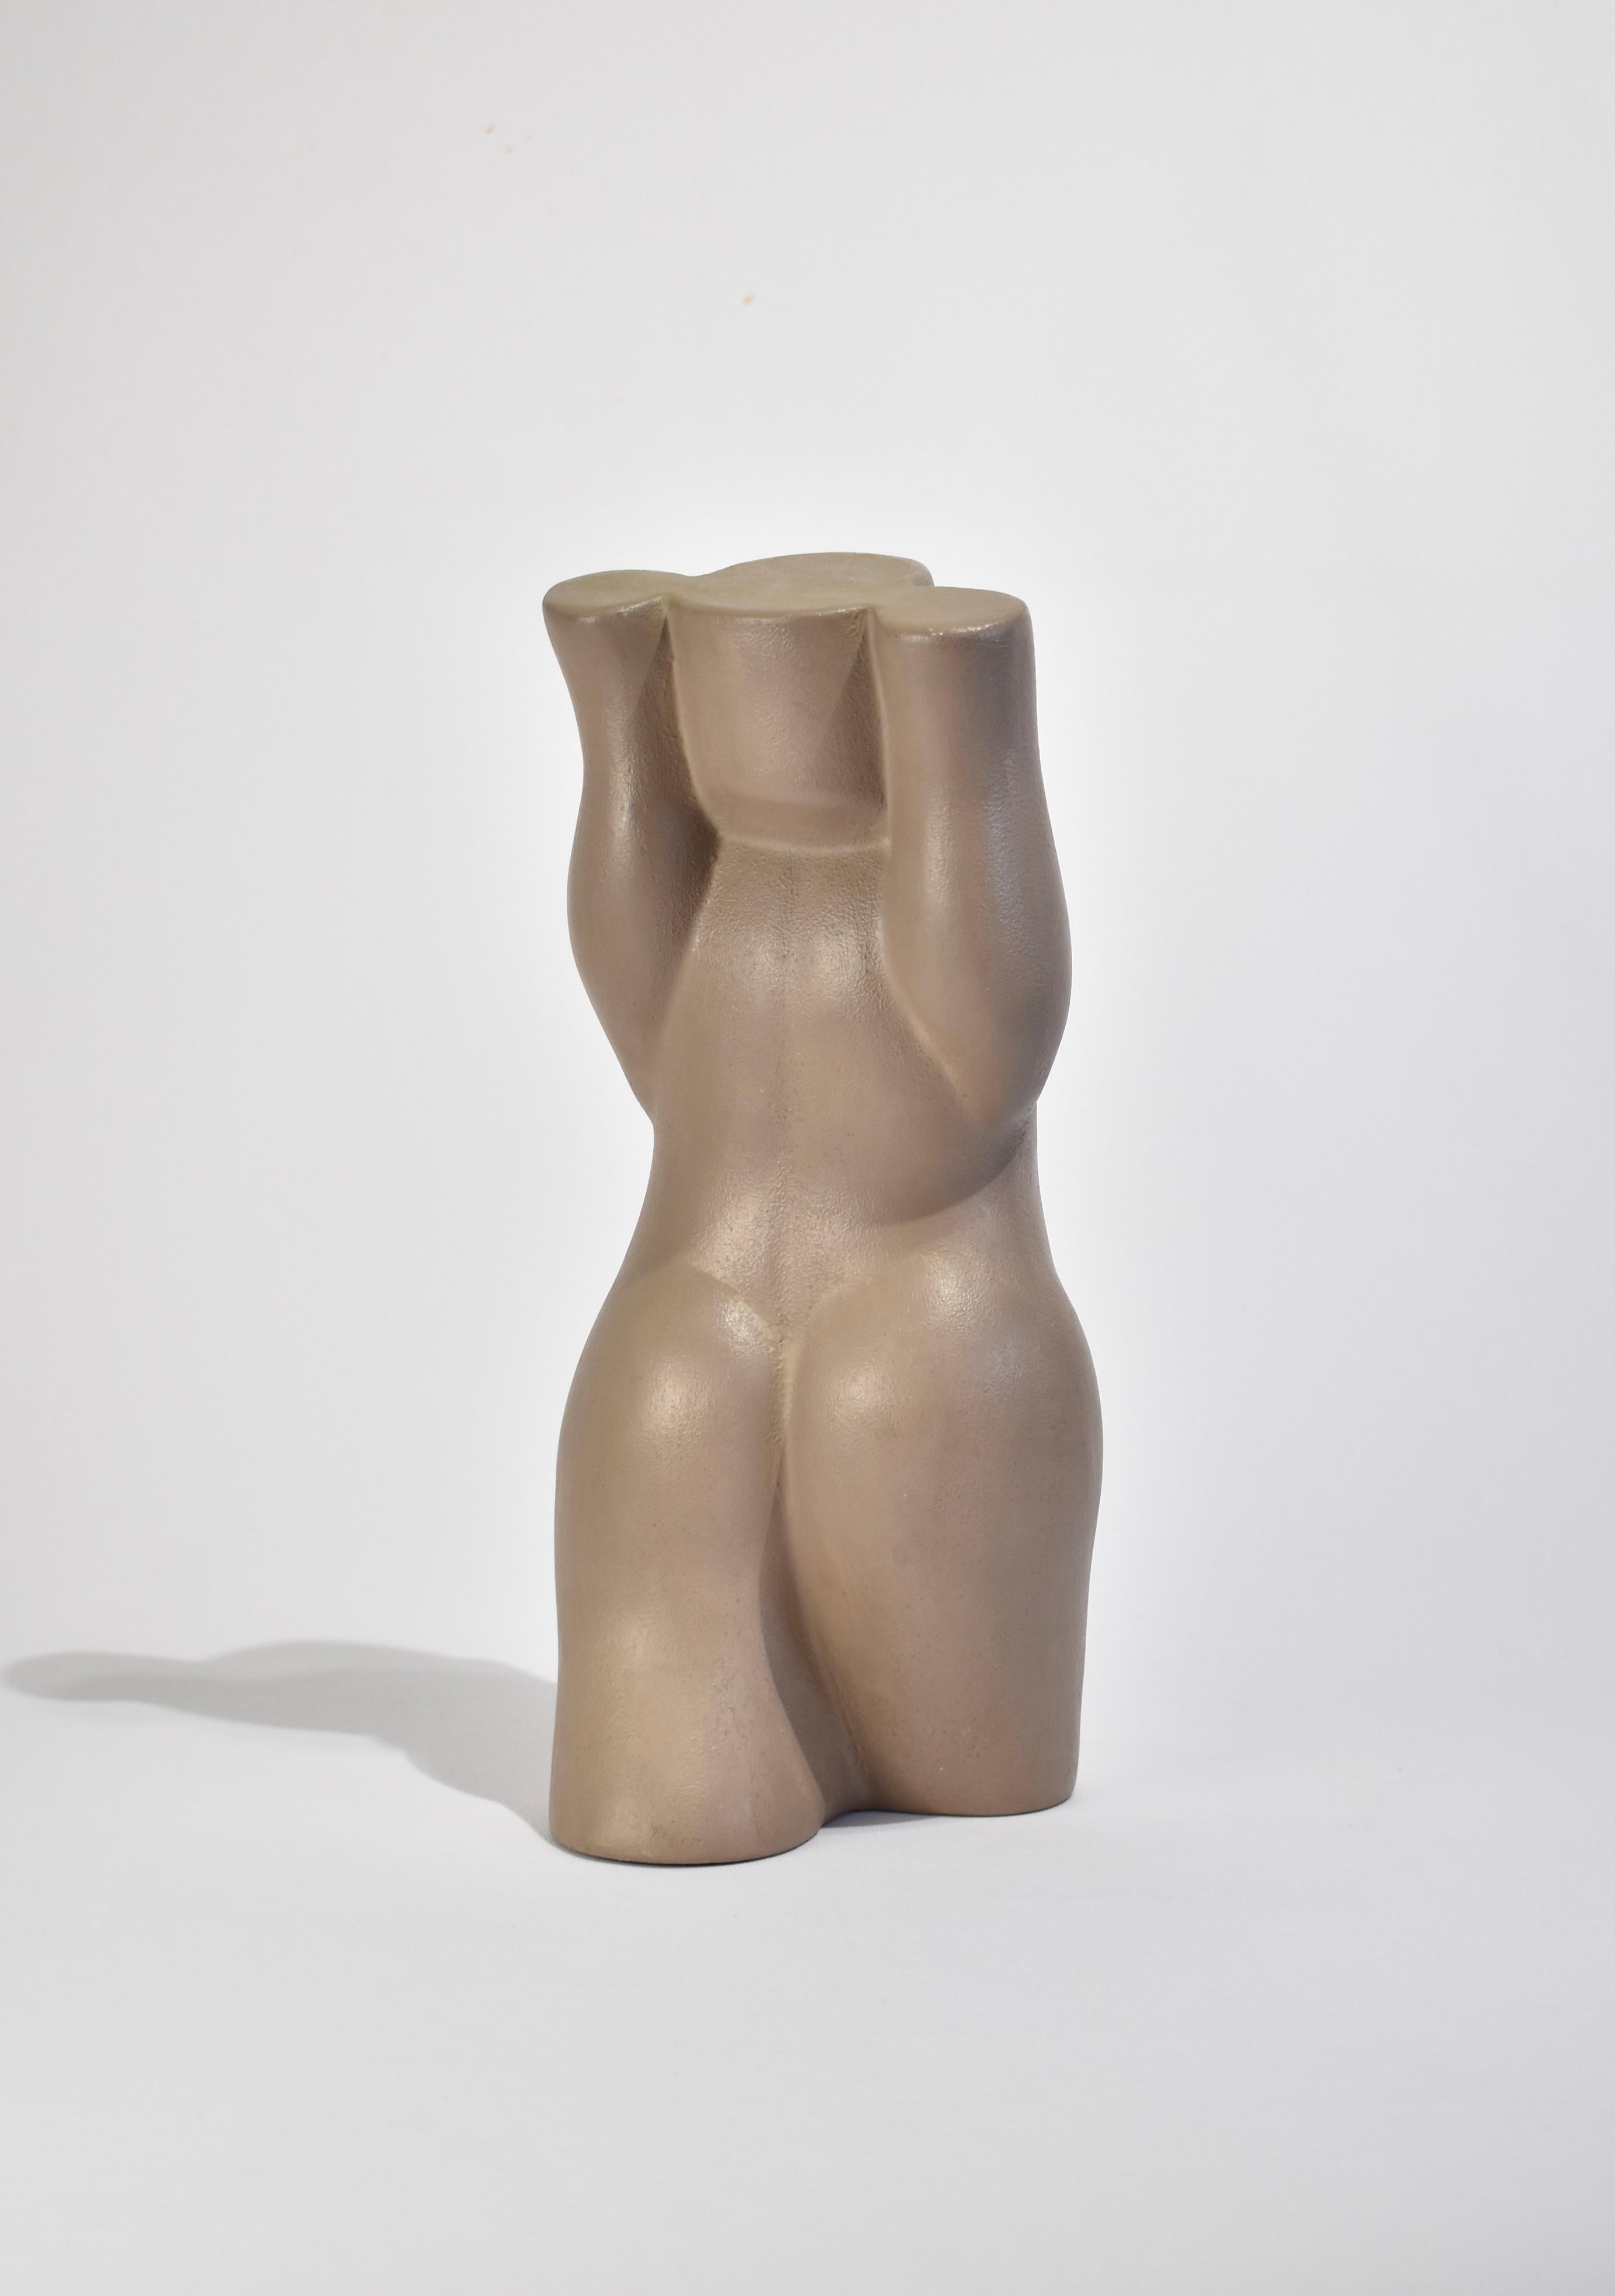 20th Century Ceramic Figure Sculpture